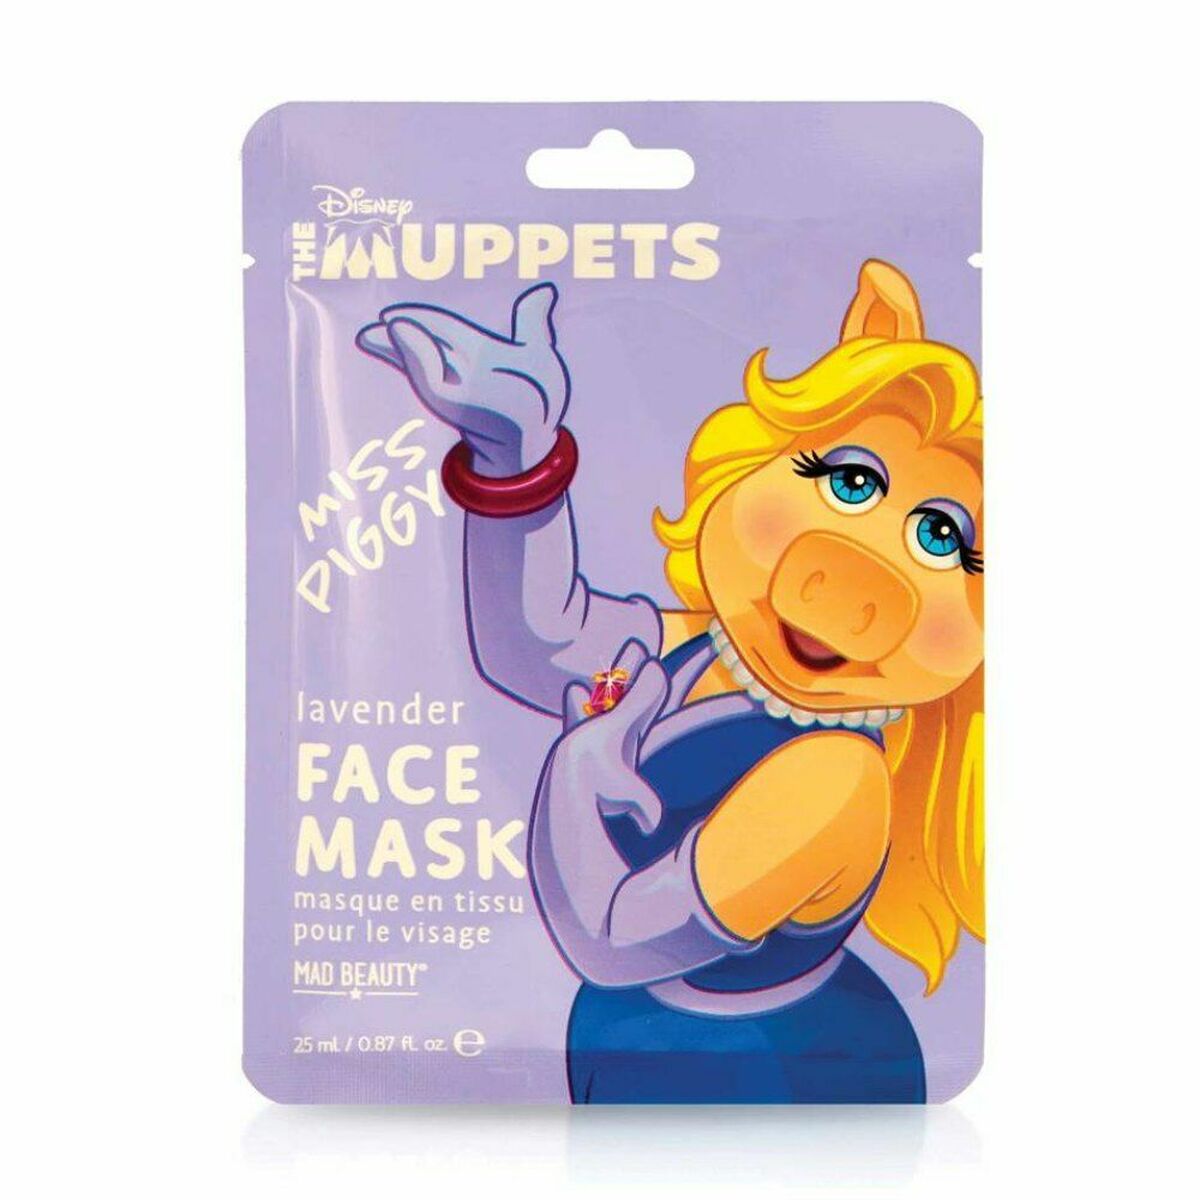 Gesichtsmaske verrückte Schönheit Die Muppets Miss Piggy Lavendar (25 ml)